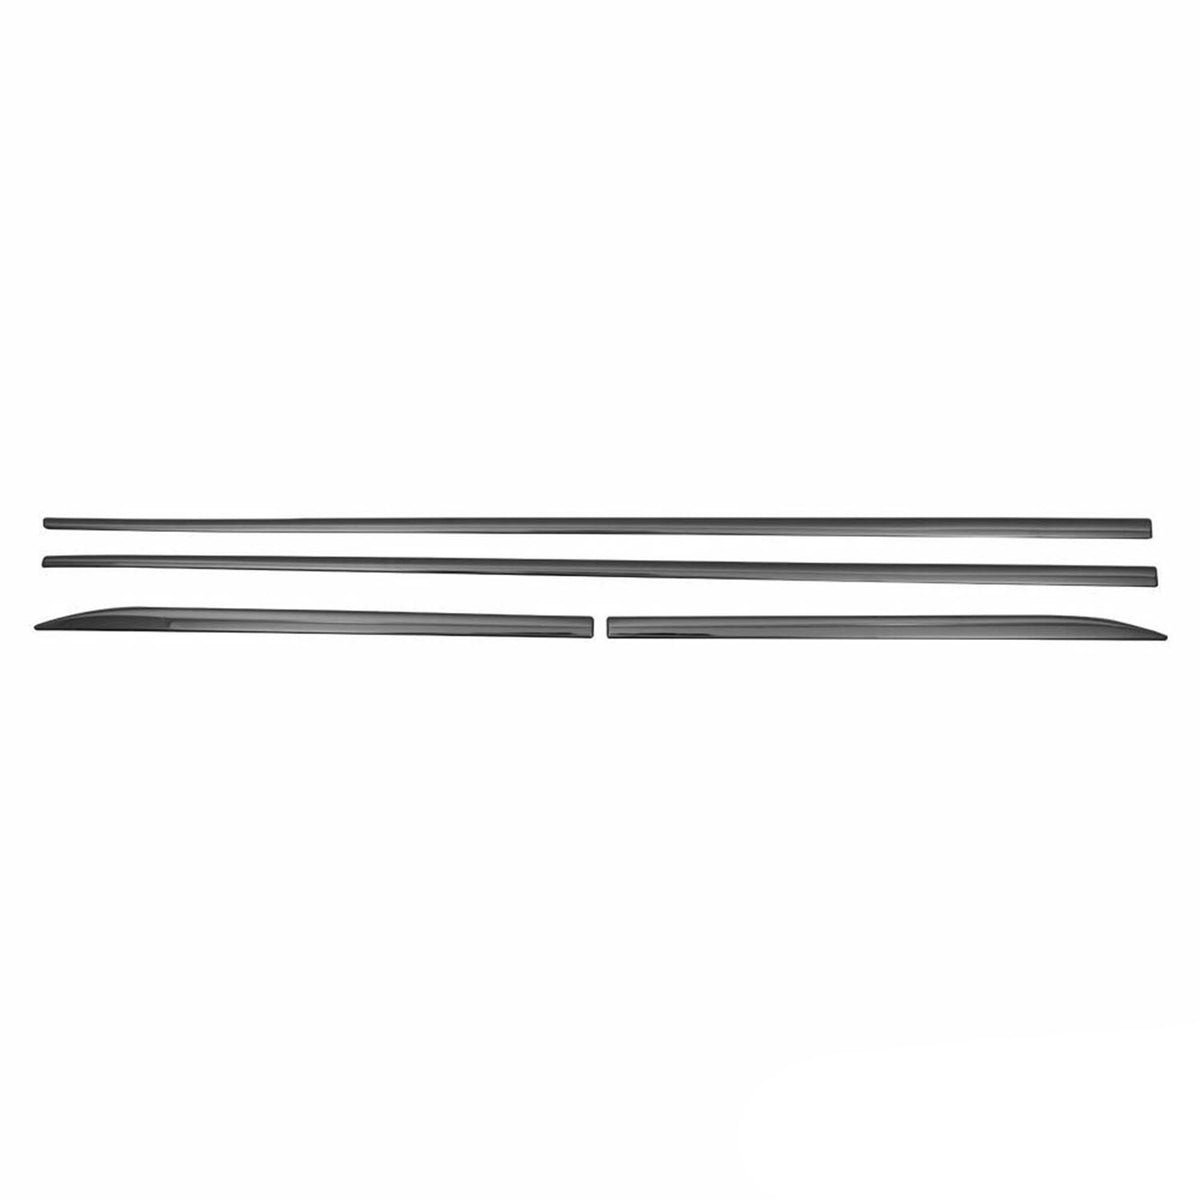 Seitentürleiste Türschutzleiste für BMW X1 F48 2015-2024 Chrom Stahl Dunkel 4x